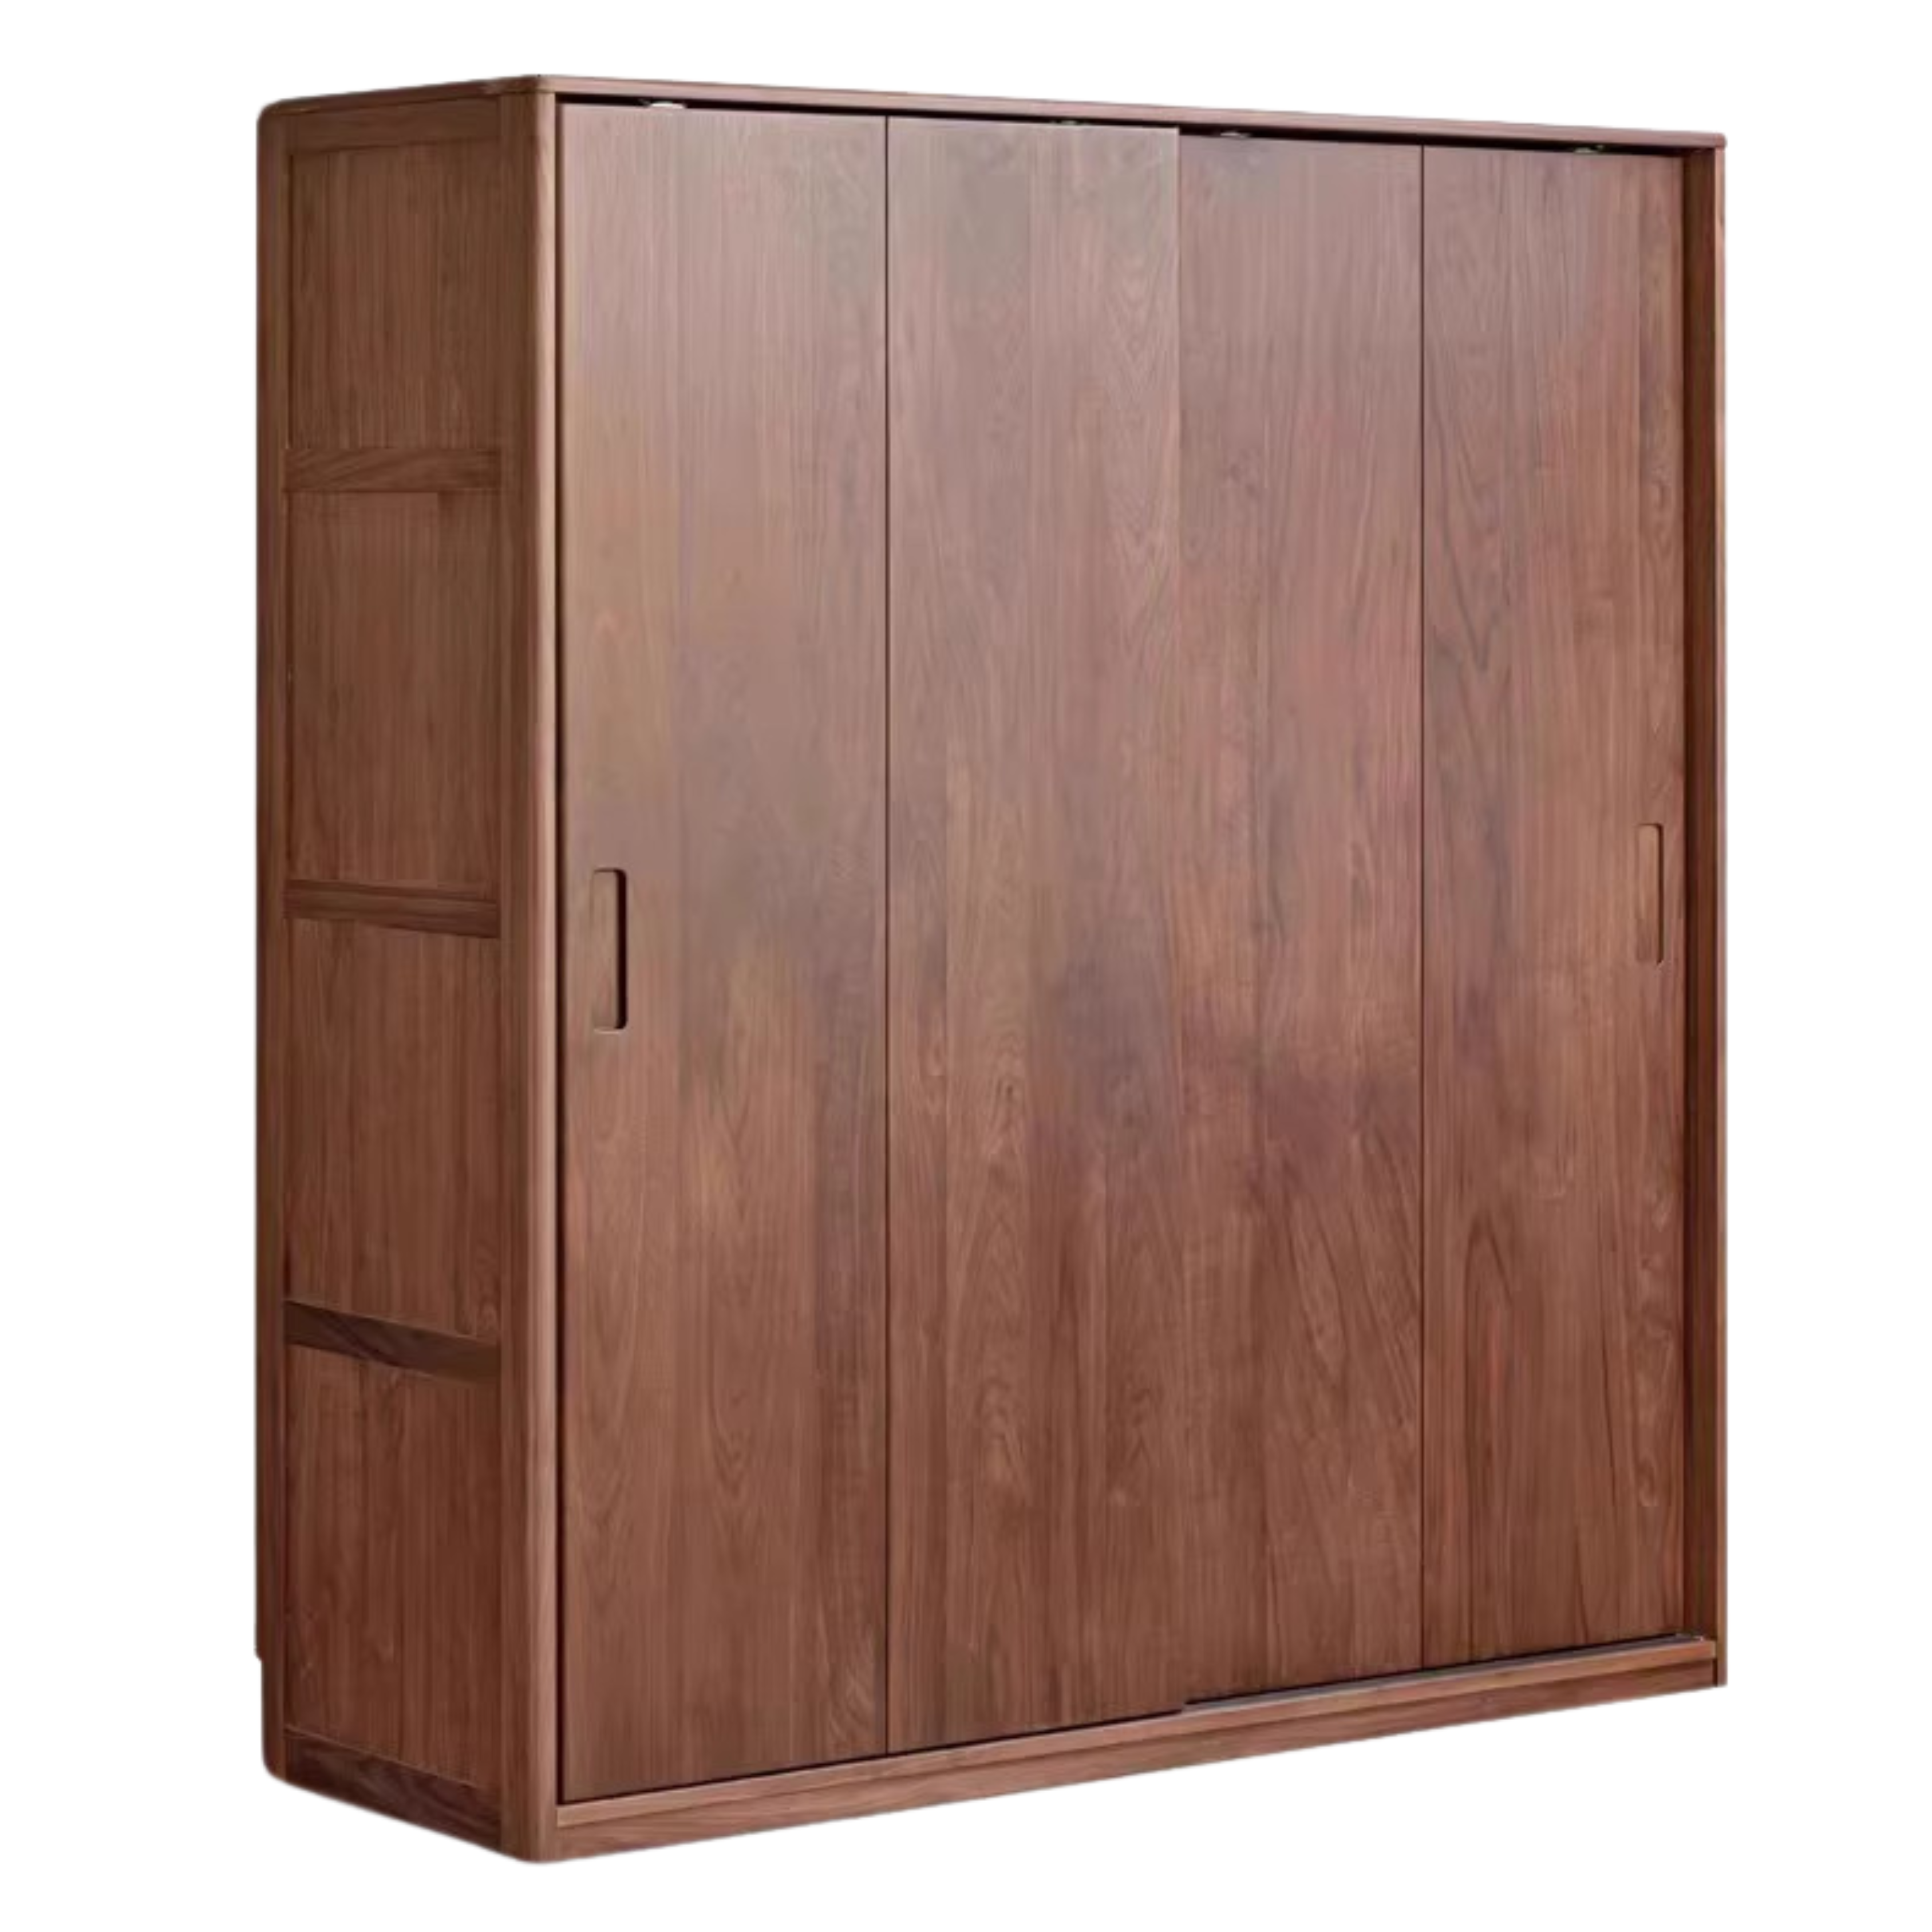 Black walnut solid wood sliding door wardrobe